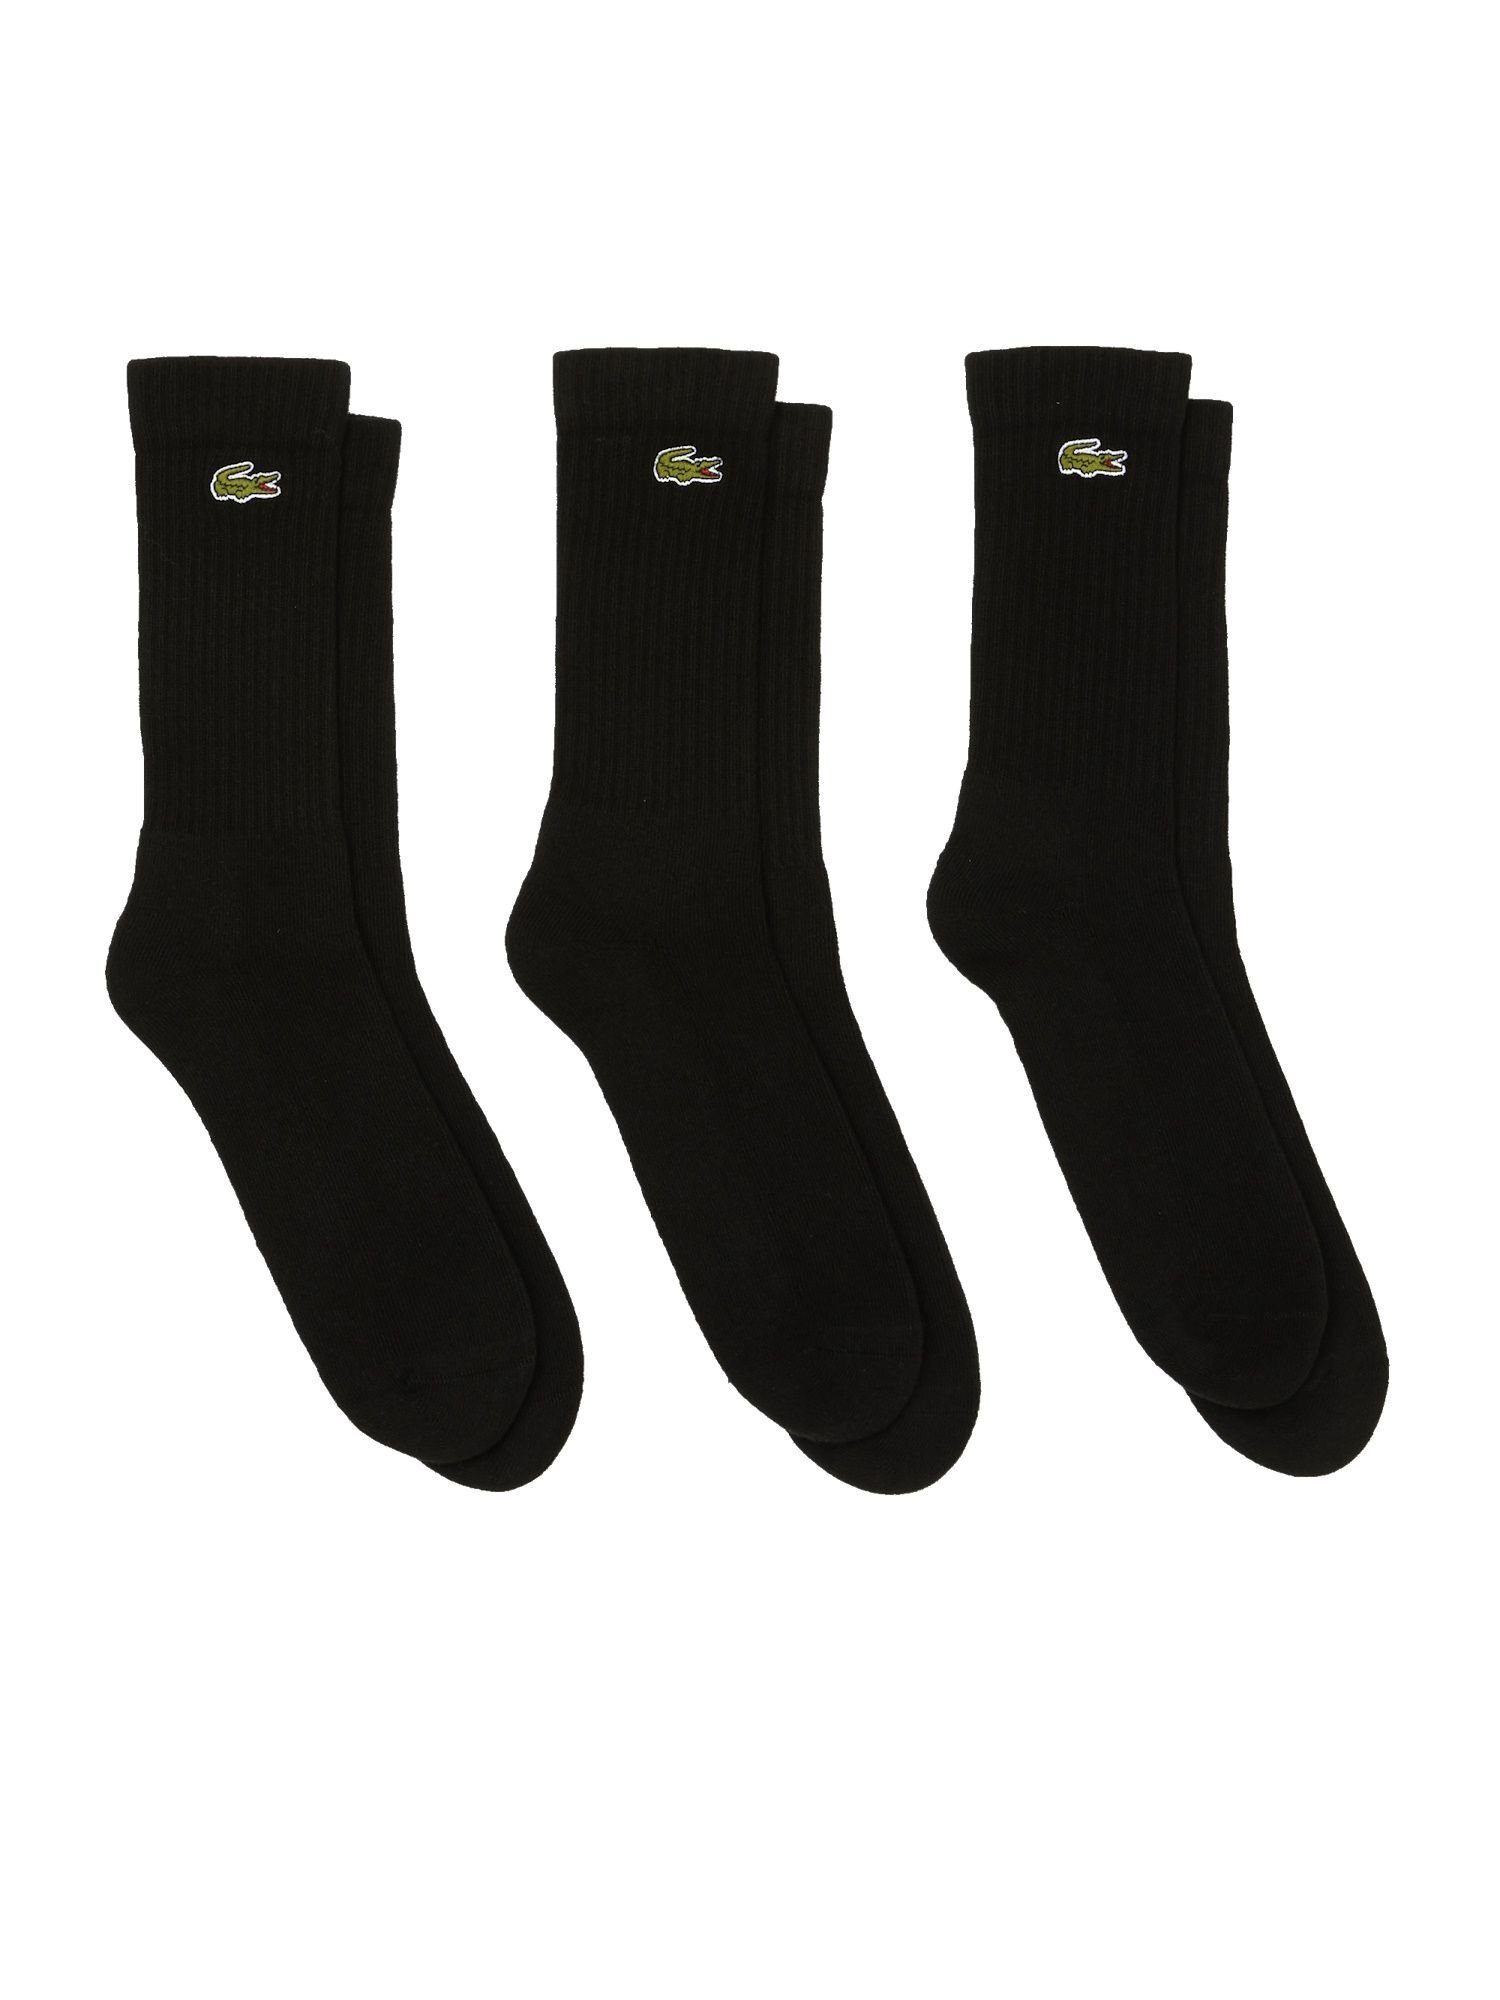 Socken Dreierpack Socken Offer (3-Paar) Socken Lacoste schwarz hohe Permanent